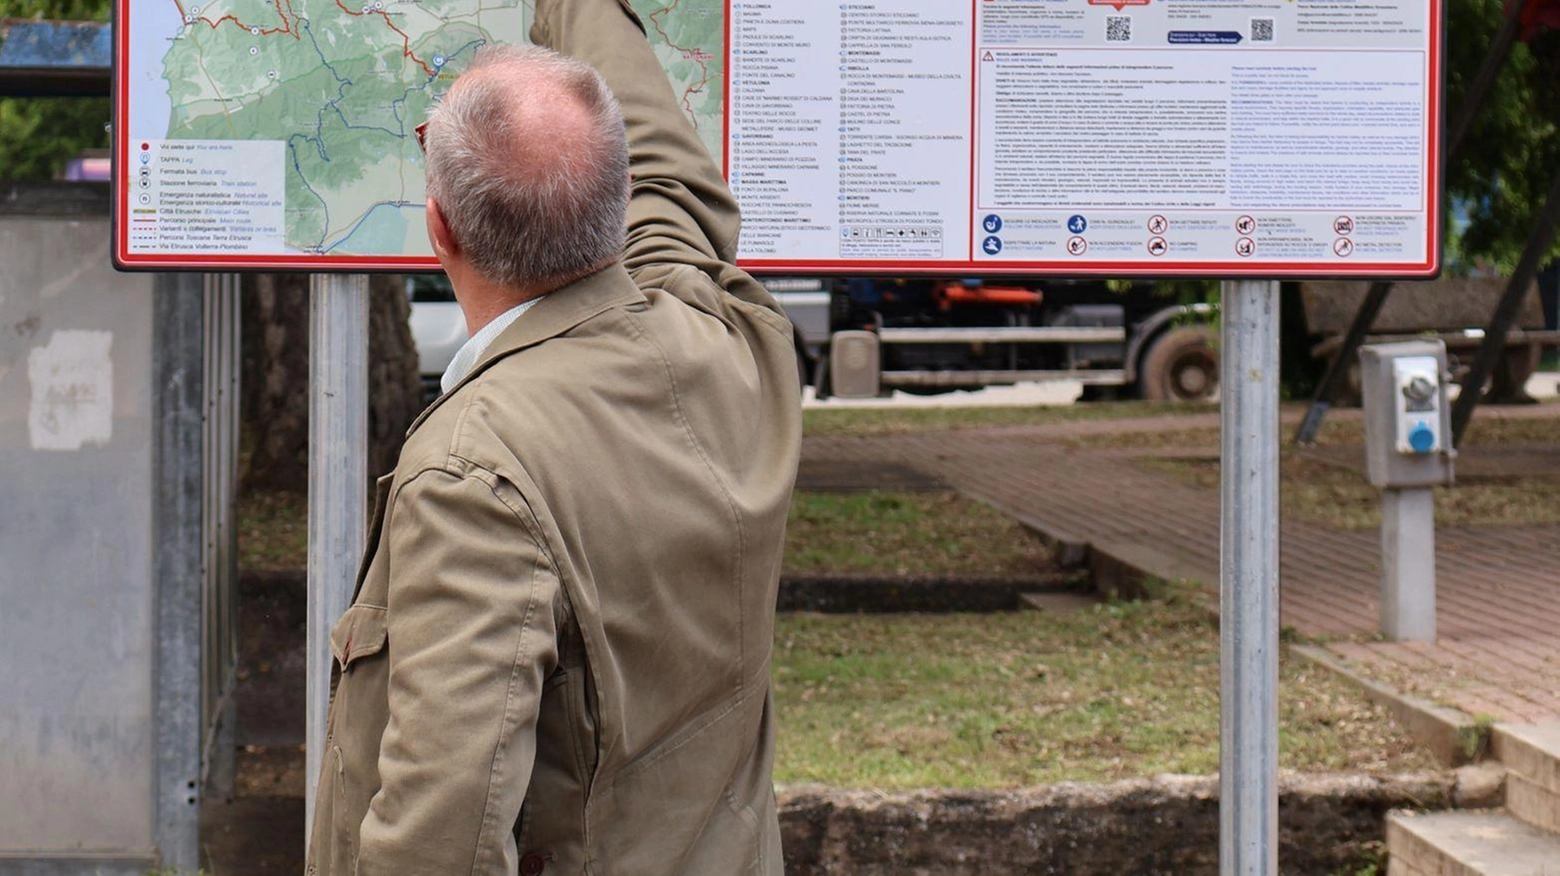 Un nuovo itinerario culturale sostenibile di 174 km sulle Colline Metallifere collega città etrusche in Maremma. Presentazione pubblica oggi a Roccastrada. Finanziato da Regione e Parco.